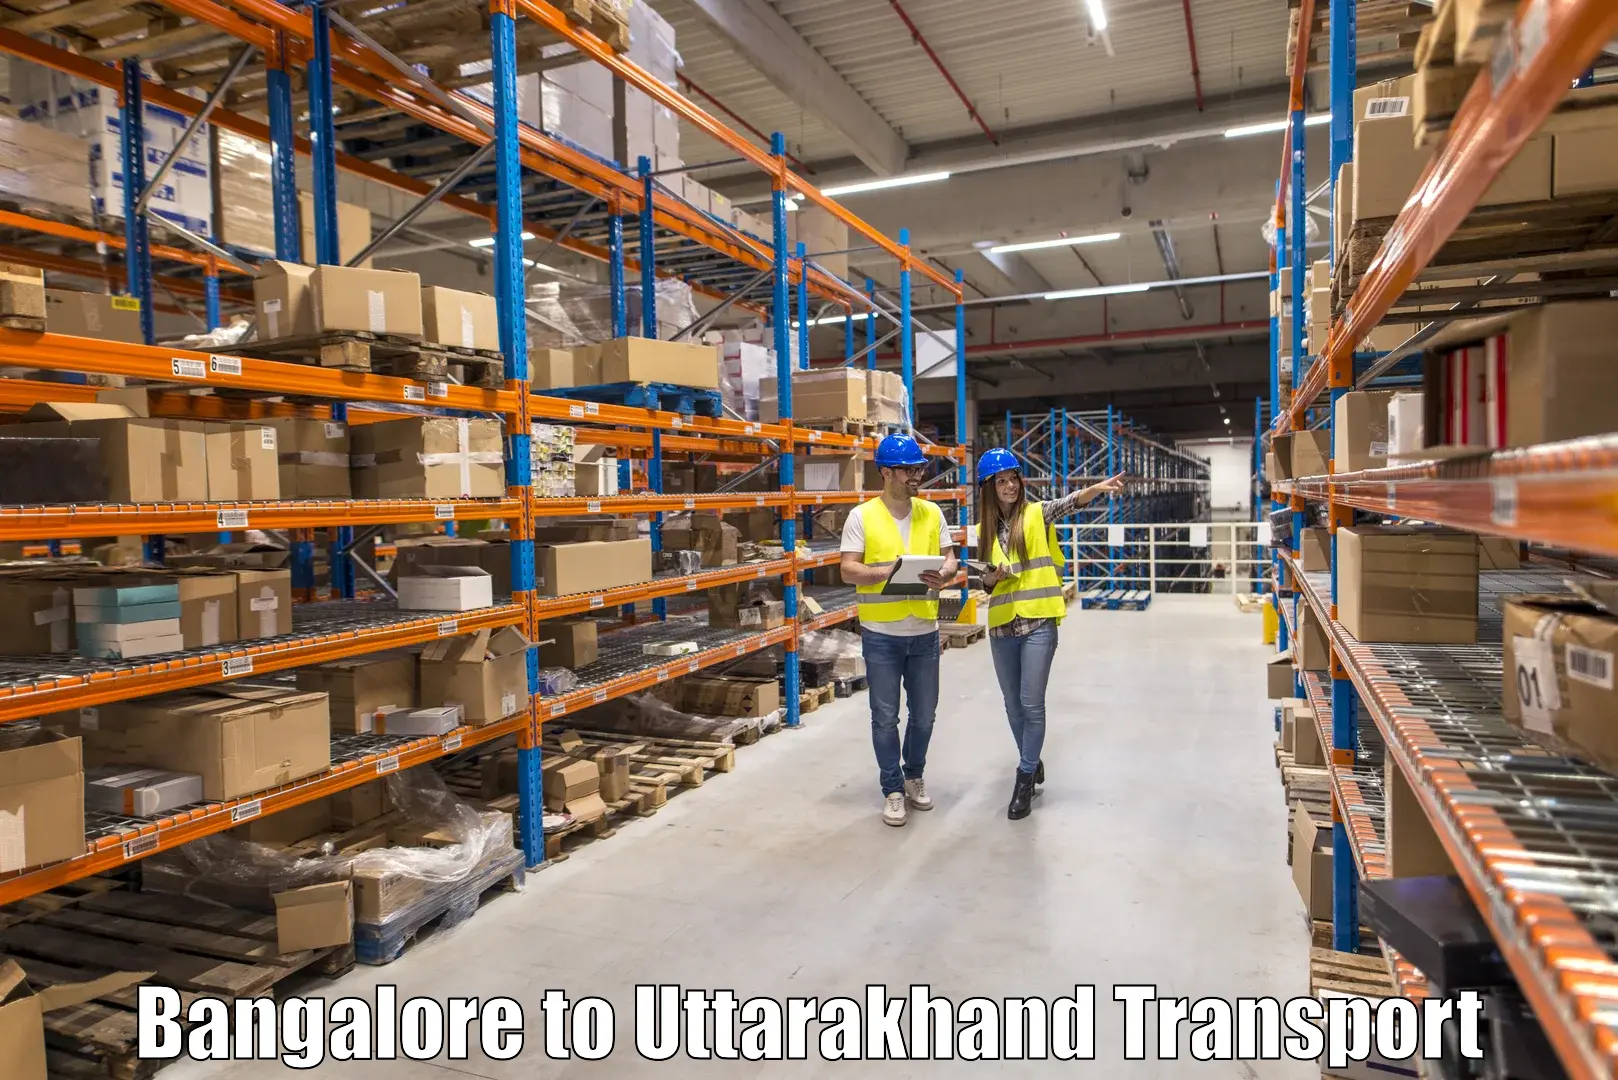 Daily parcel service transport Bangalore to Kotdwara